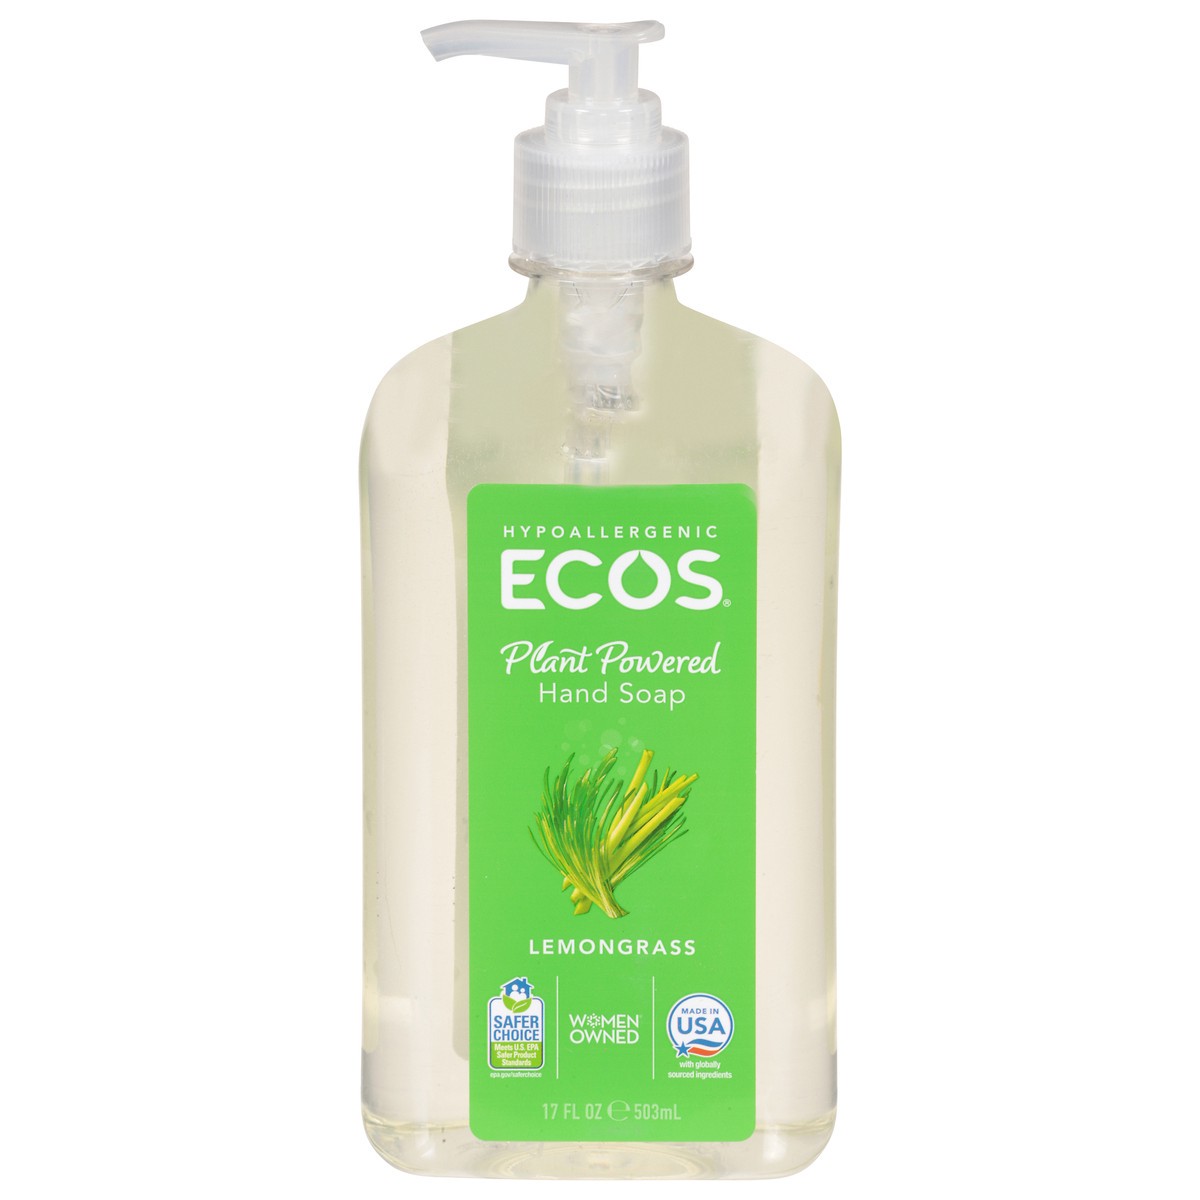 slide 1 of 9, Ecos Lemongrass Hand Soap 17 fl oz, 17 fl oz